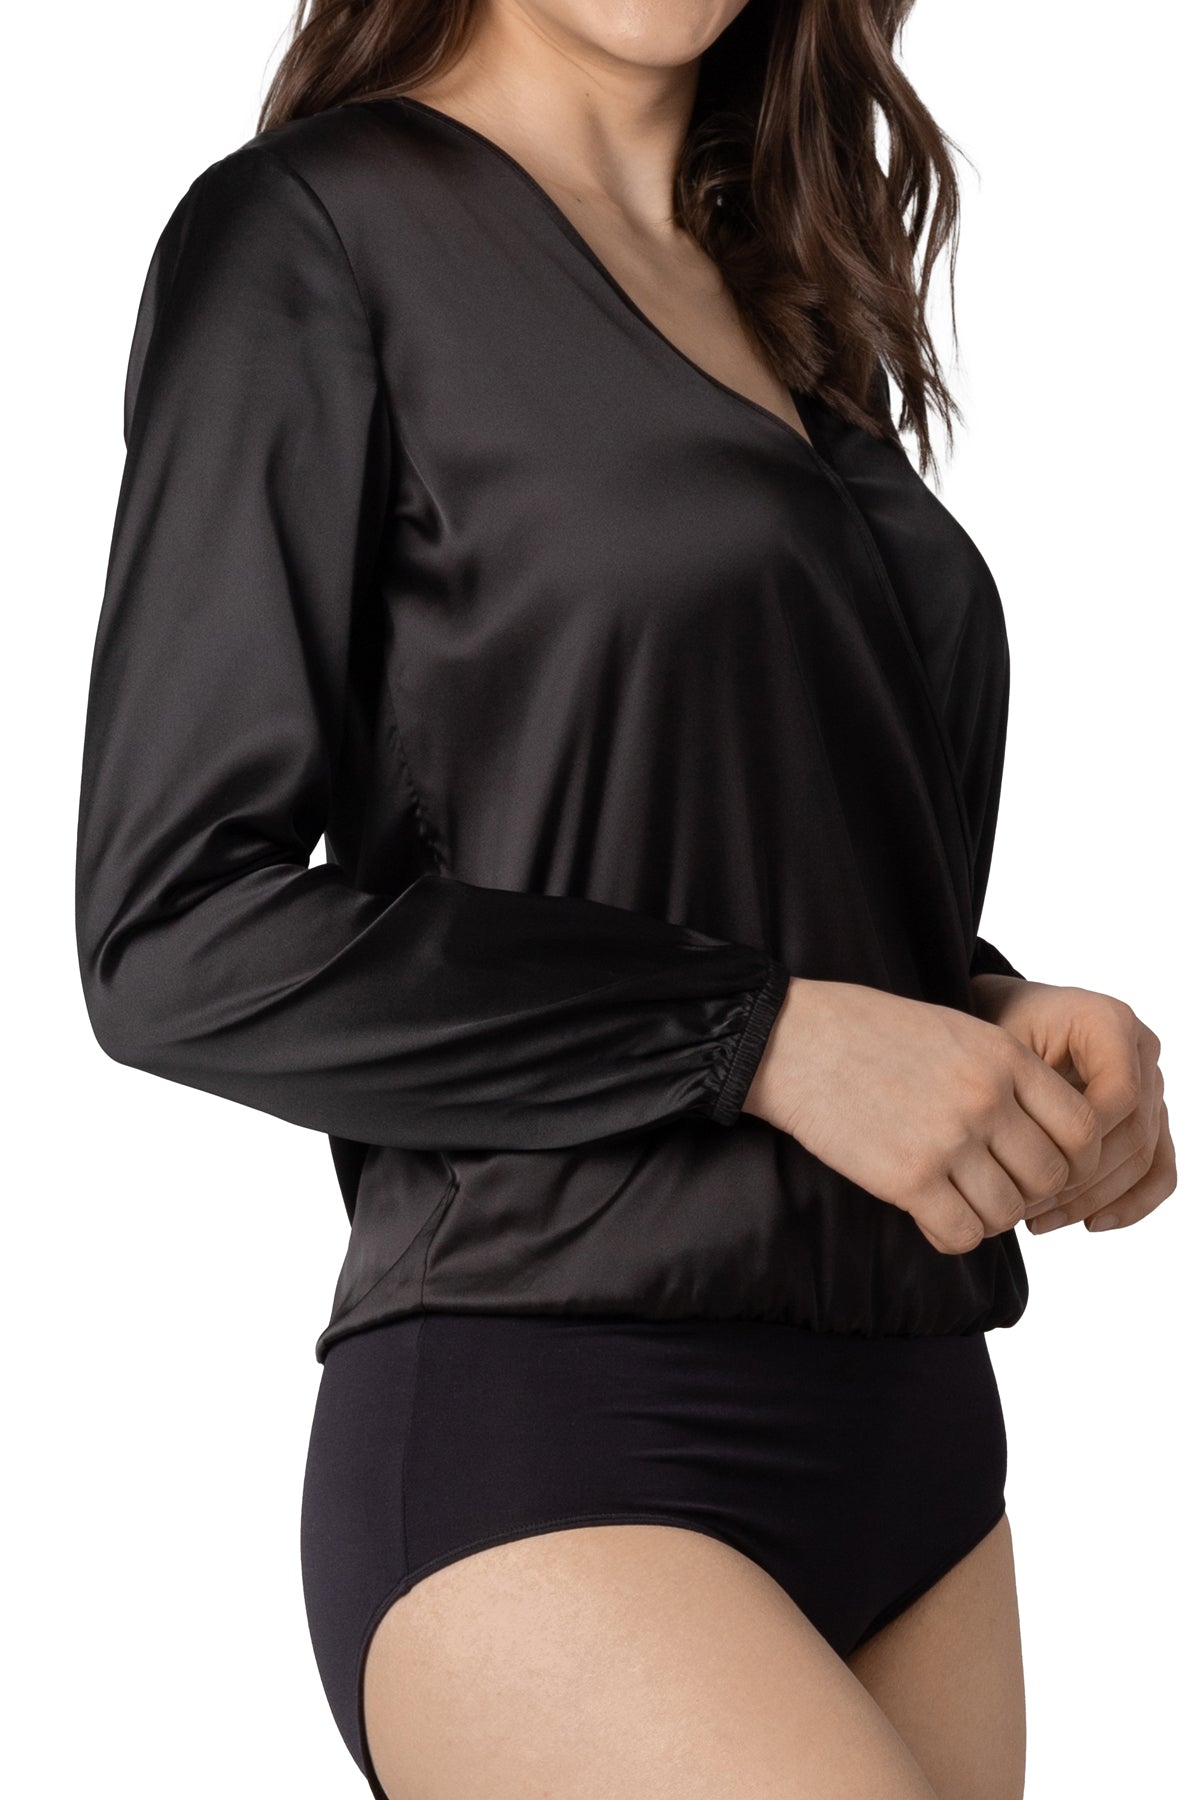 Jane Long Sleeve Cross-Over Full Back Bodysuit